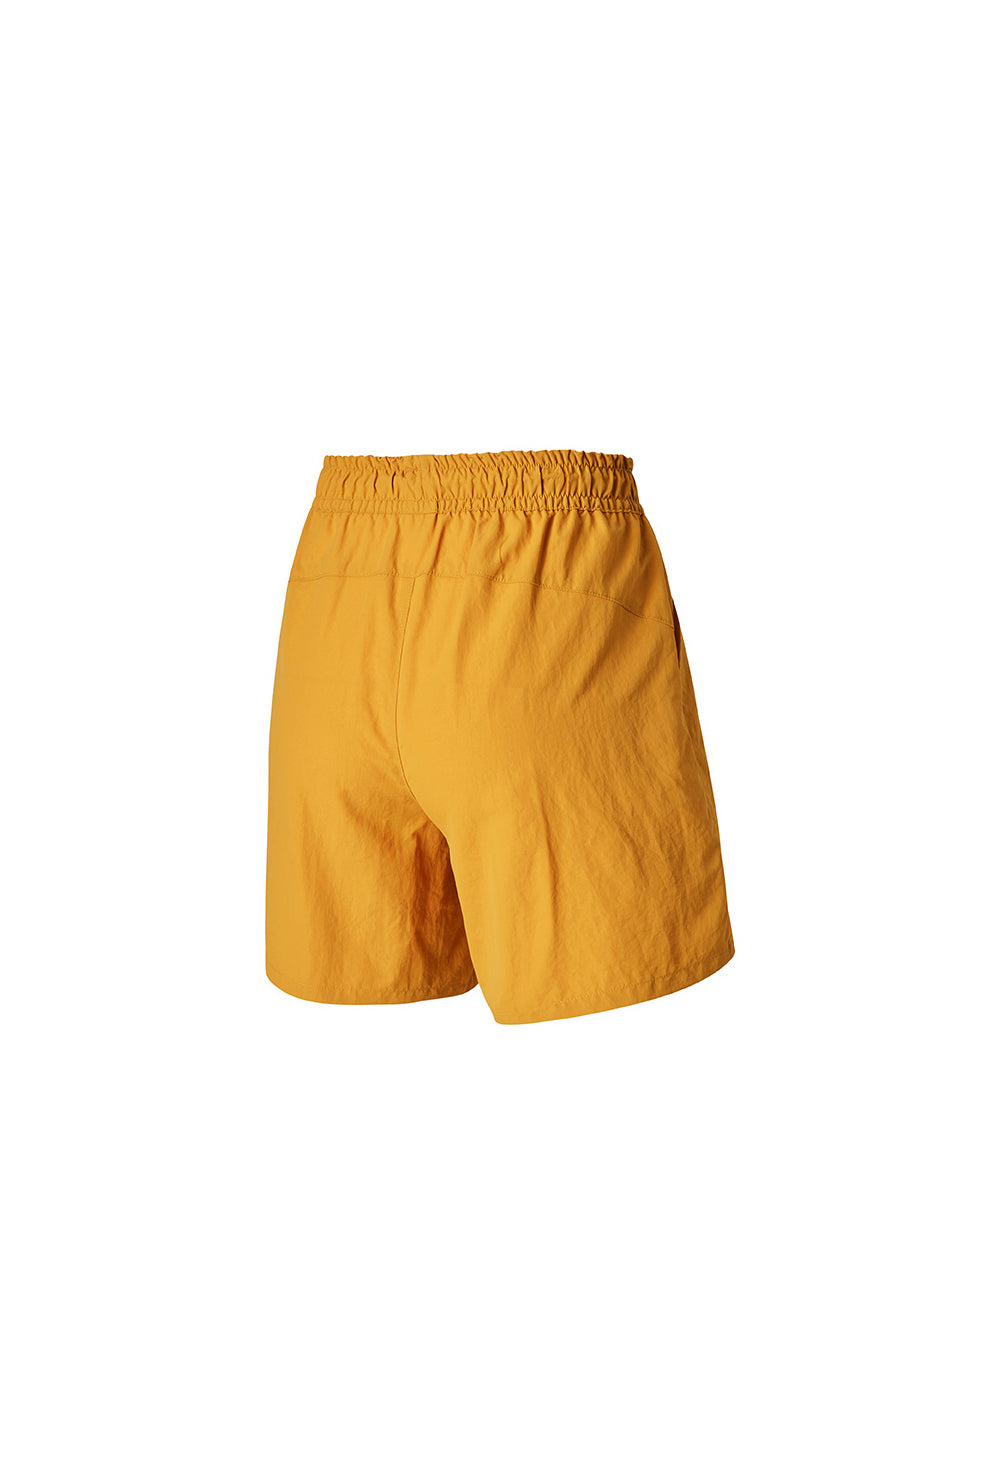 Basic Woven Half Shorts - Sunflower (Clearance)